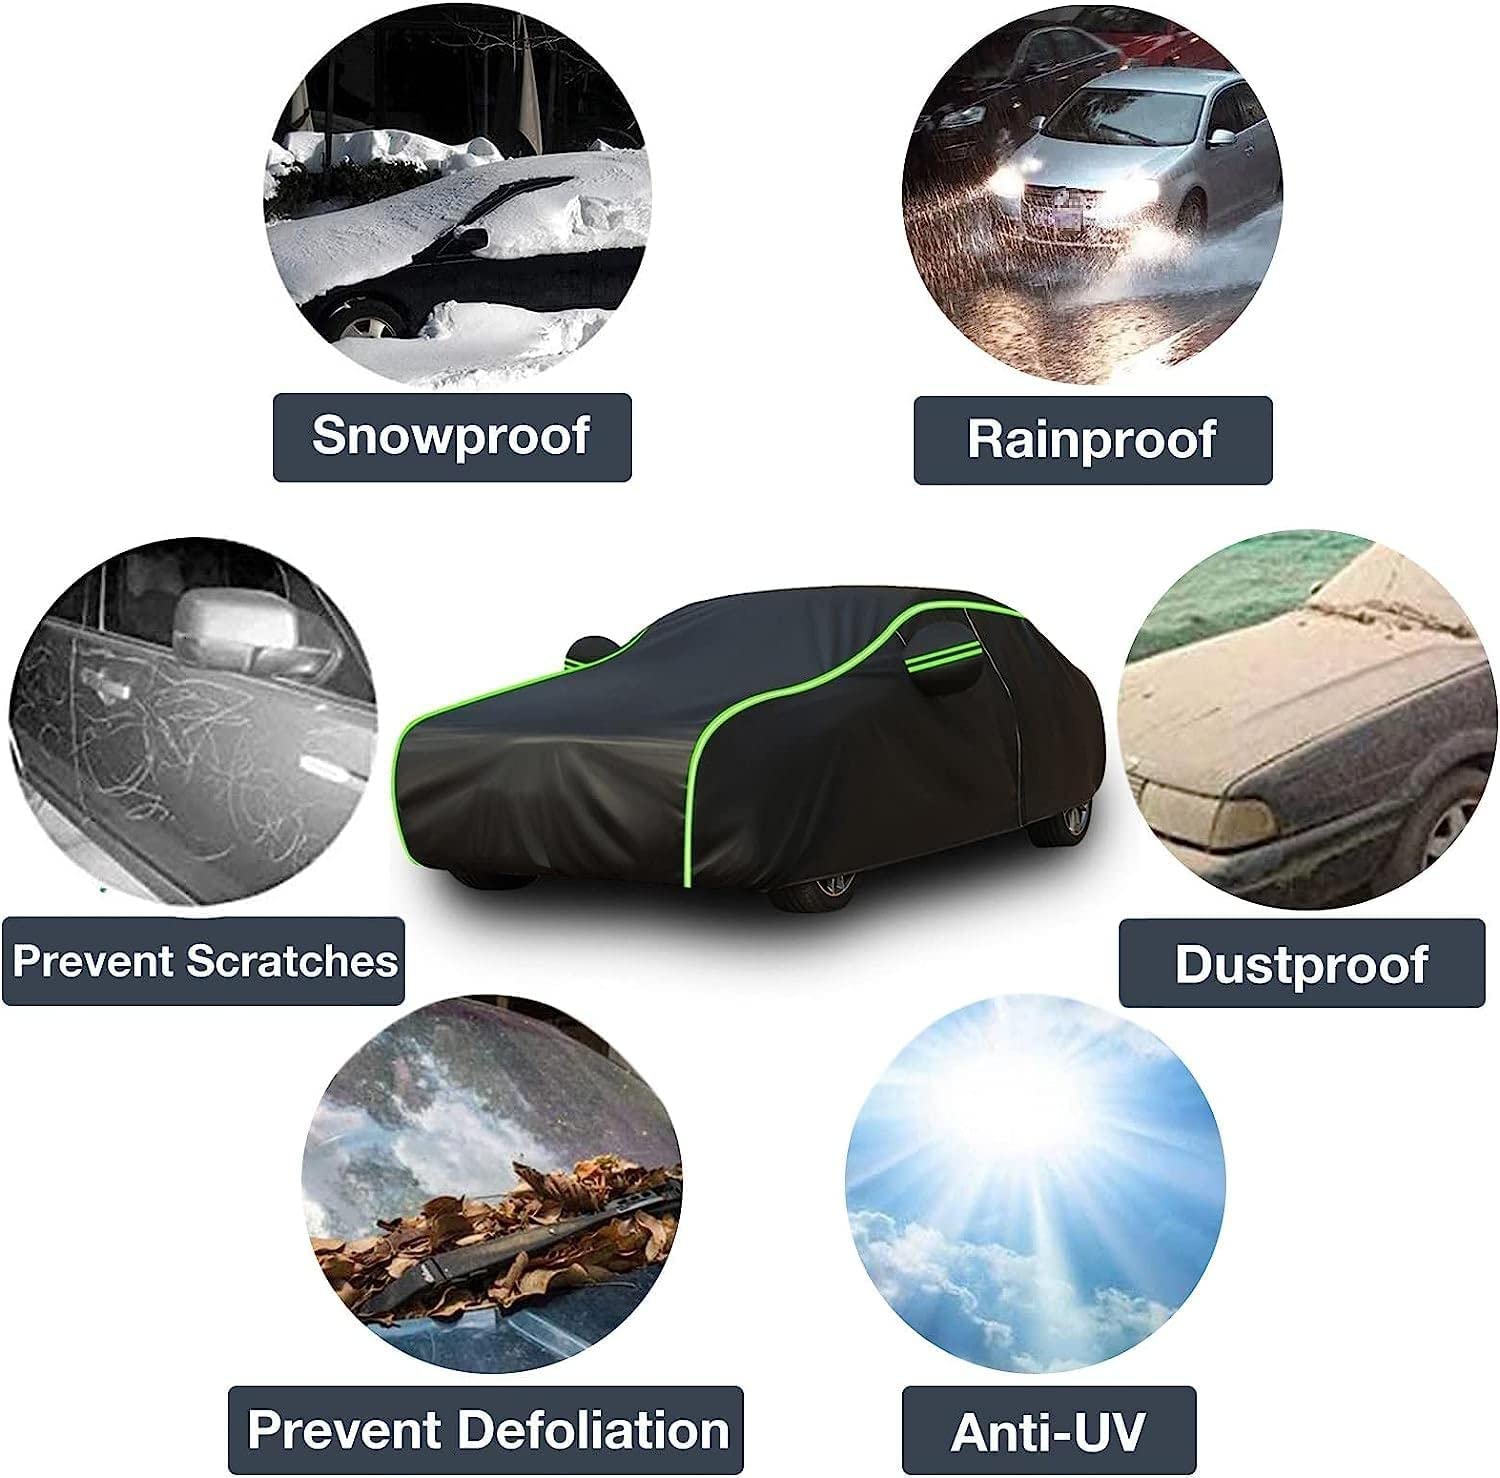 Autoabdeckung, wasserdicht, für ToOota RAV4 Premium (2013), Autoabdeckung, langlebig, für den Außenbereich, Sonnenschutz, regenfest, UV-Schutz, staubdicht, Allwetterschutz von MyNvy